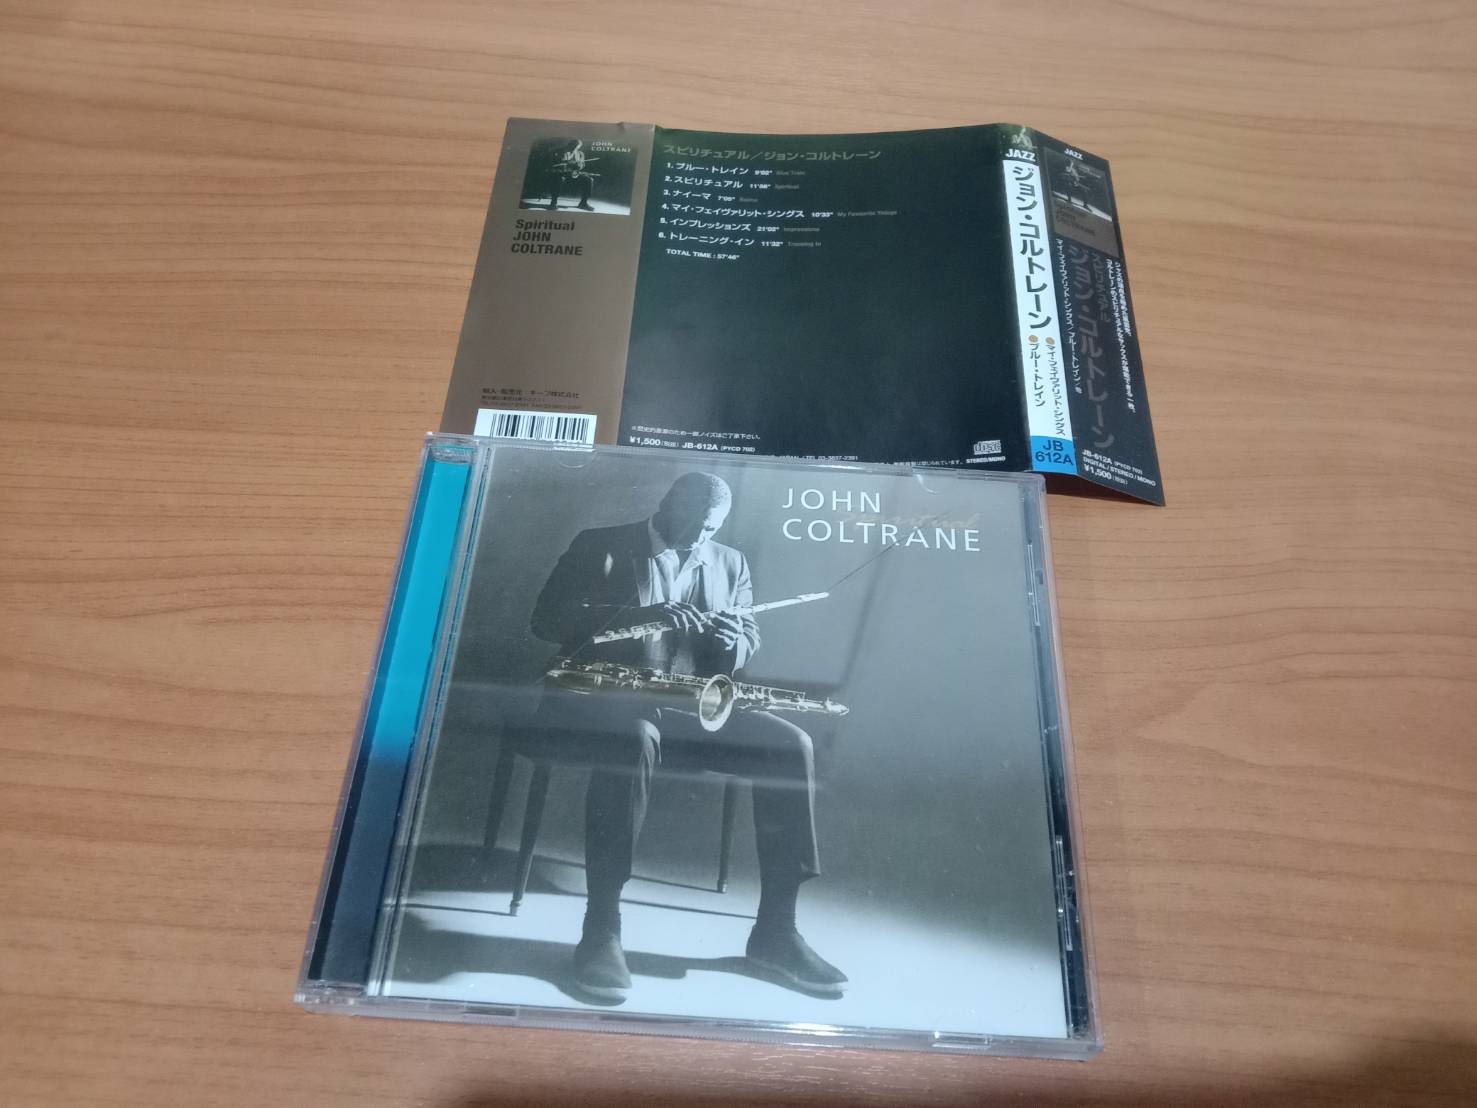 ซีดีเพลง CD ซีดีเพลงสากล John Coltrane Spinitual  ***โปรดอ่านรายละเอียดก่อนทำการสั่งซื้อ****